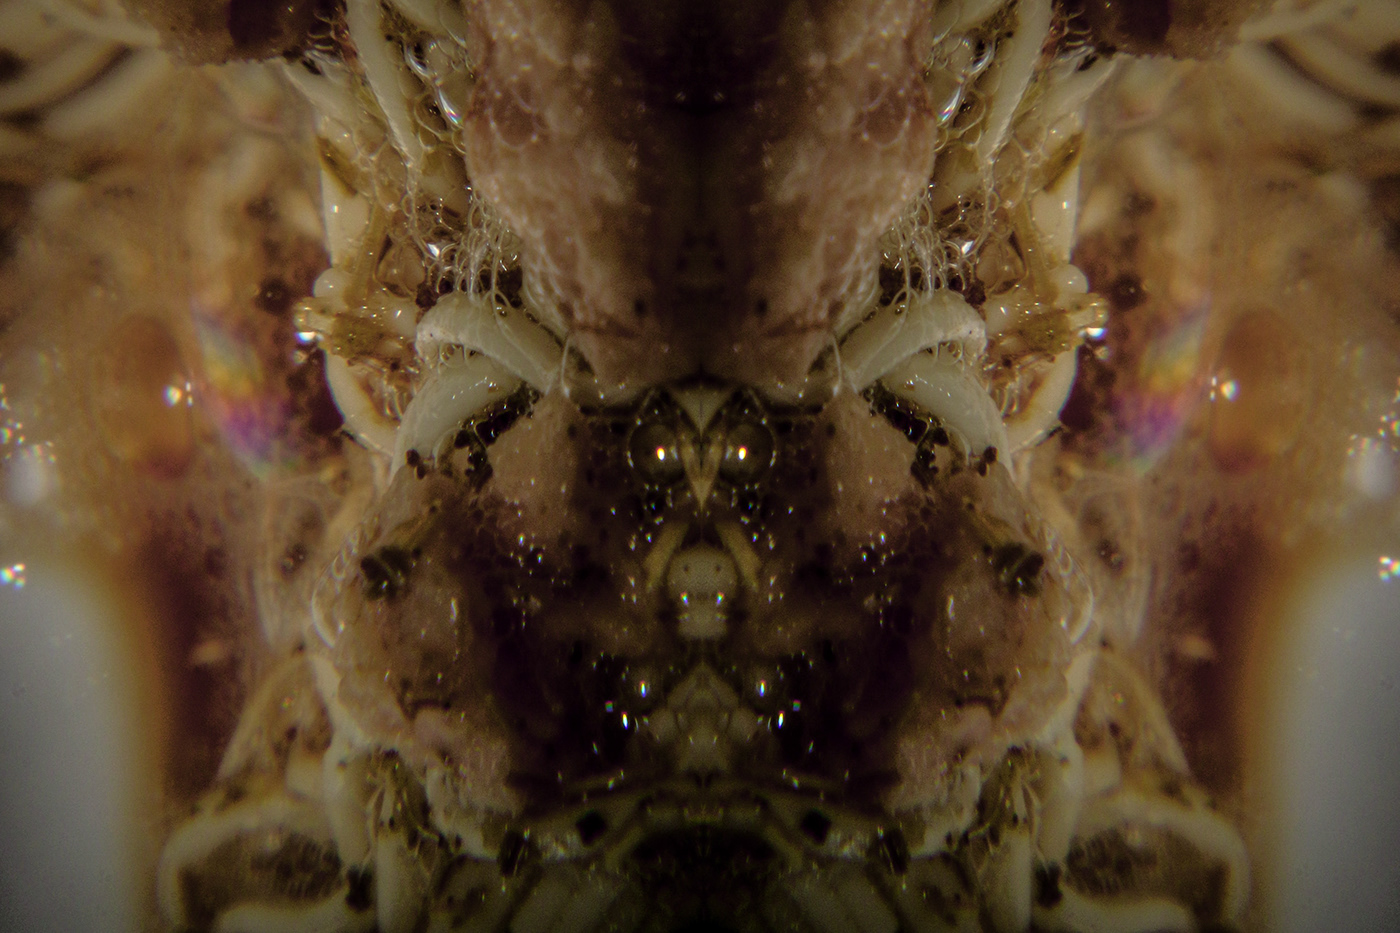 criaturas arte dark oscuro Bizarro mascaras Fotografia collage caras insectos